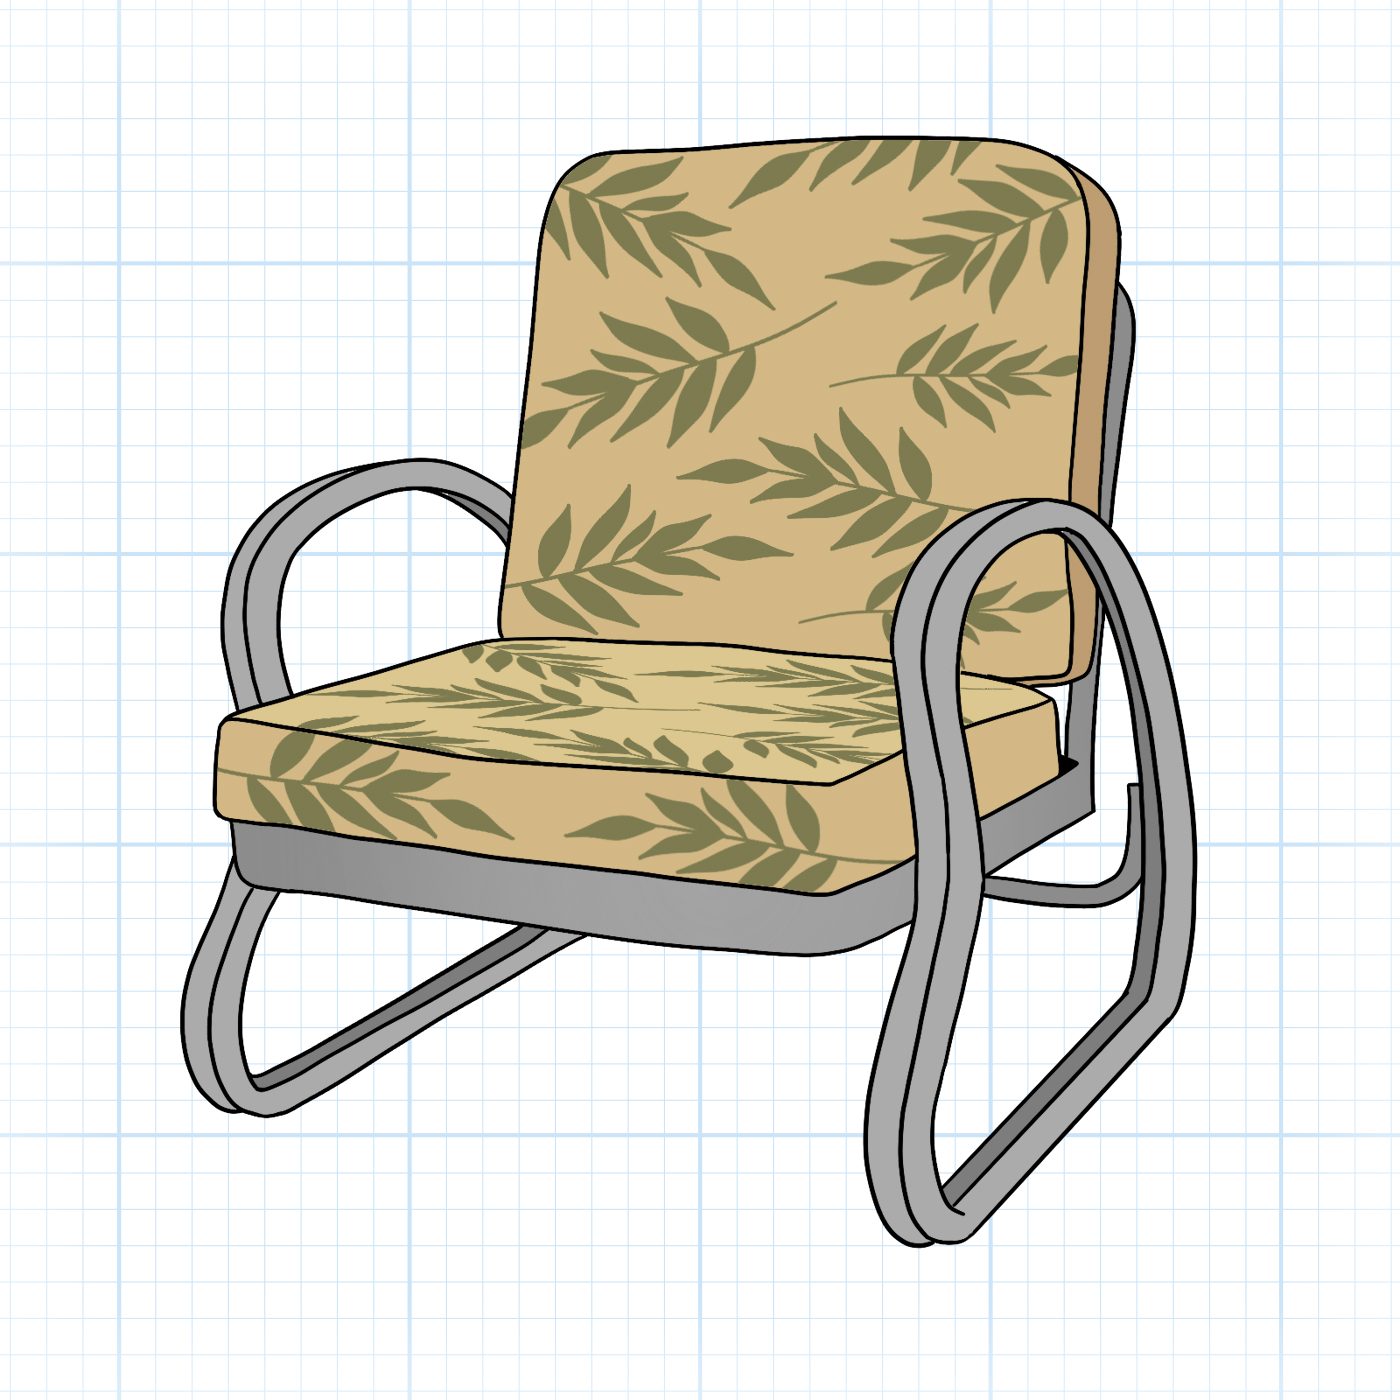 Retro Kitsch Chair Graphic